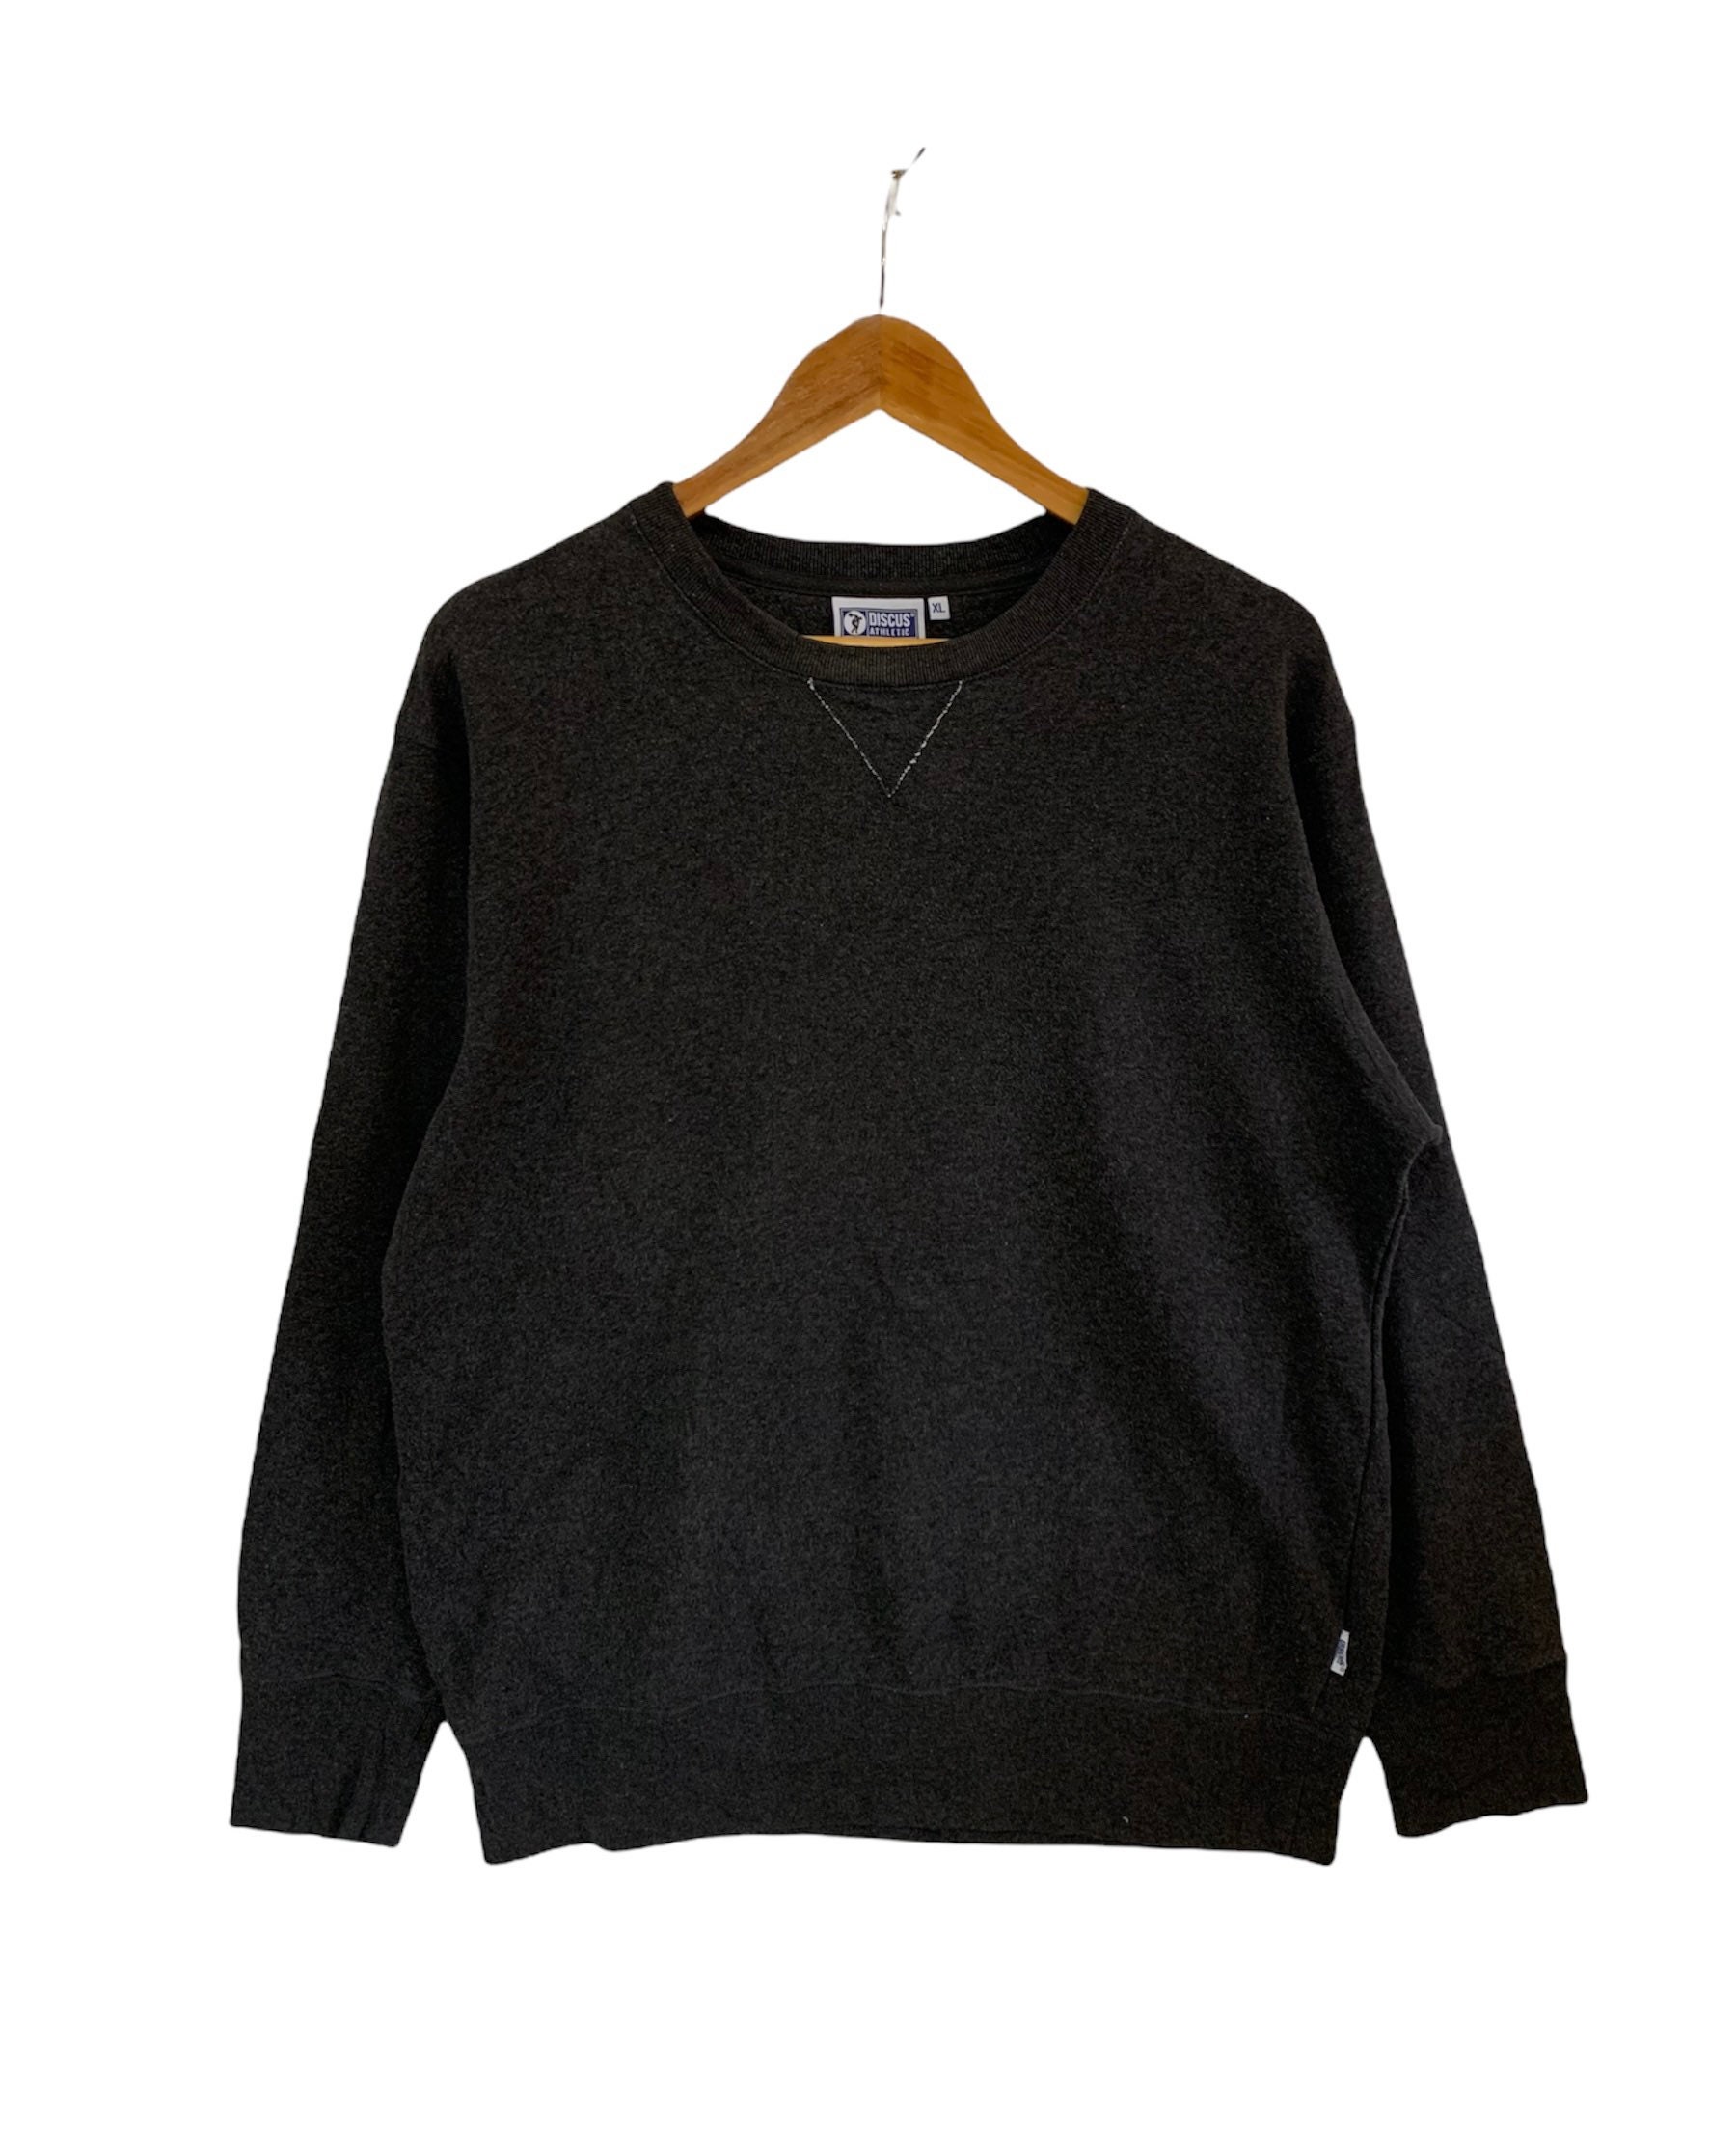 Vintage Diskutieren Sweatshirt Xl Größe Grau Pullover von FongfongStudio